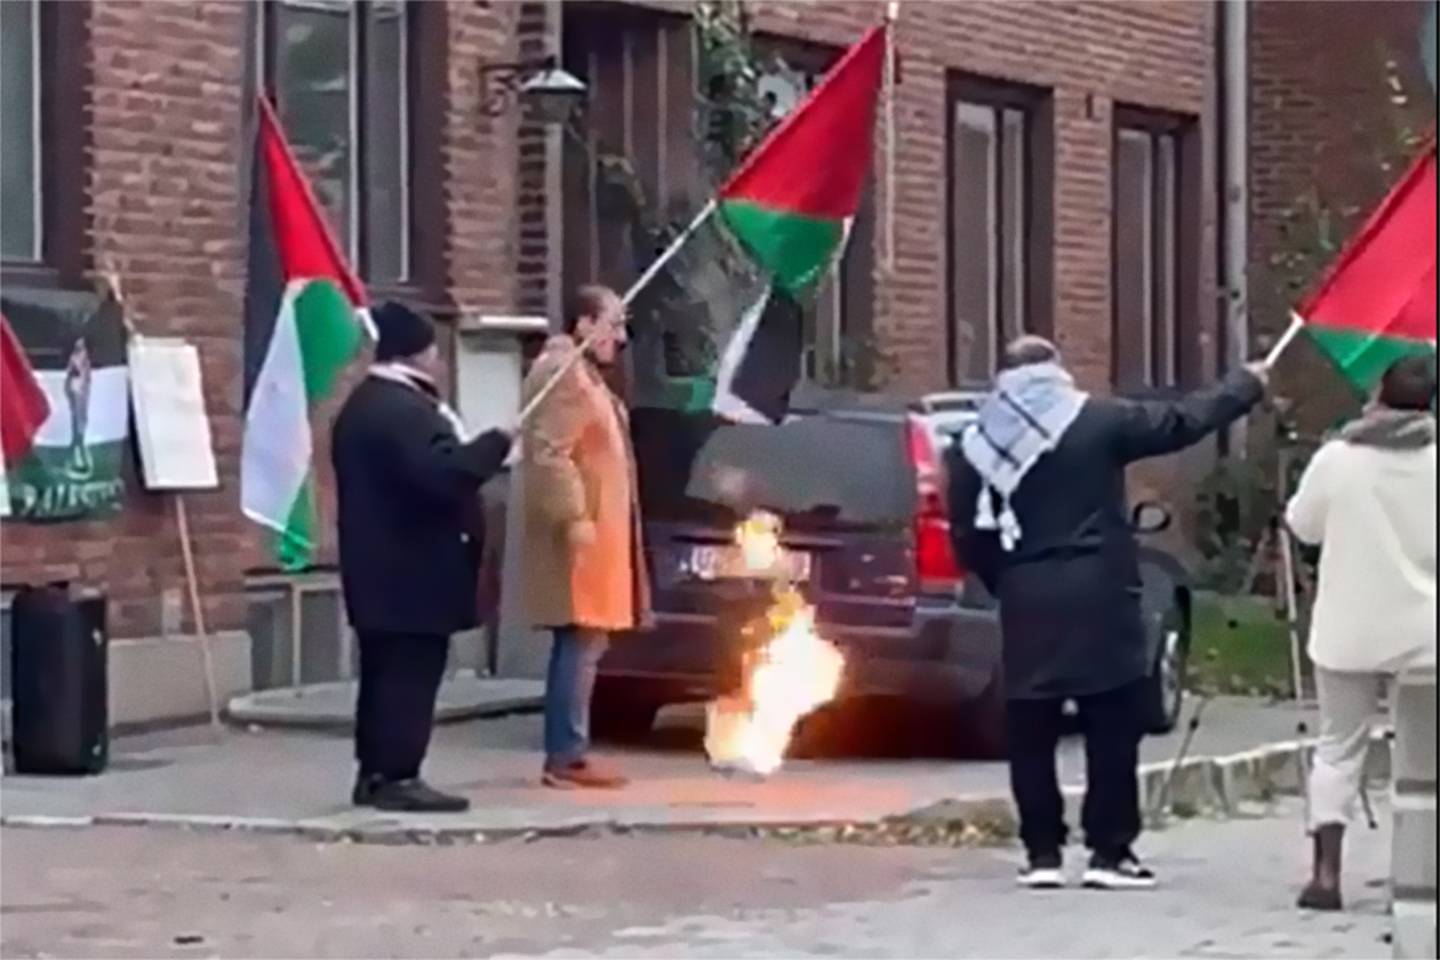 Demonstration mot Israel vid synagogan i Malmö där den israeliska flaggan brändes.